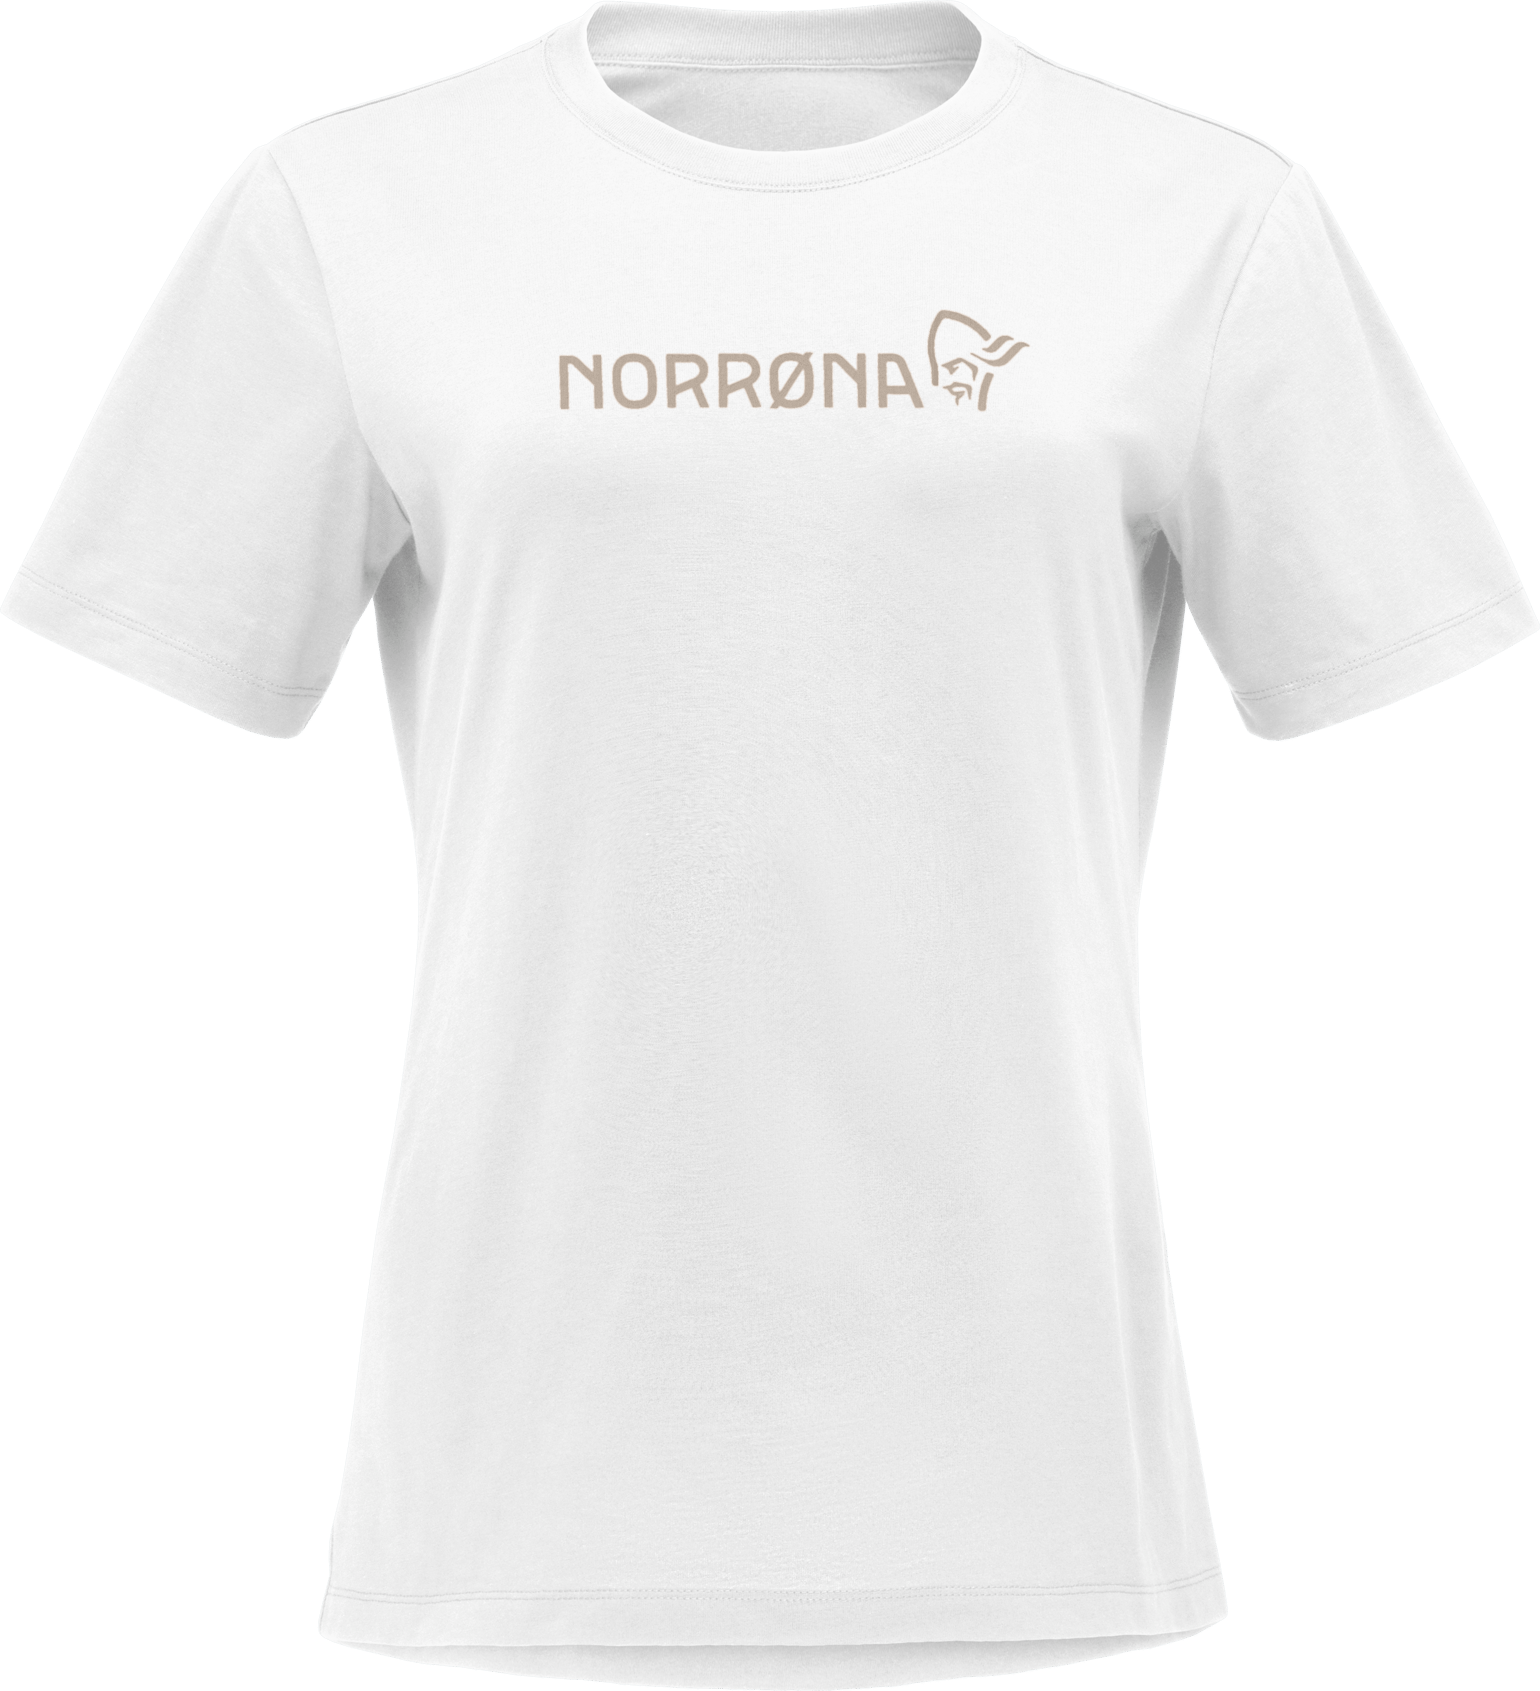 Norrøna Women's /29 Cotton Norrøna Viking T-shirt Pure White